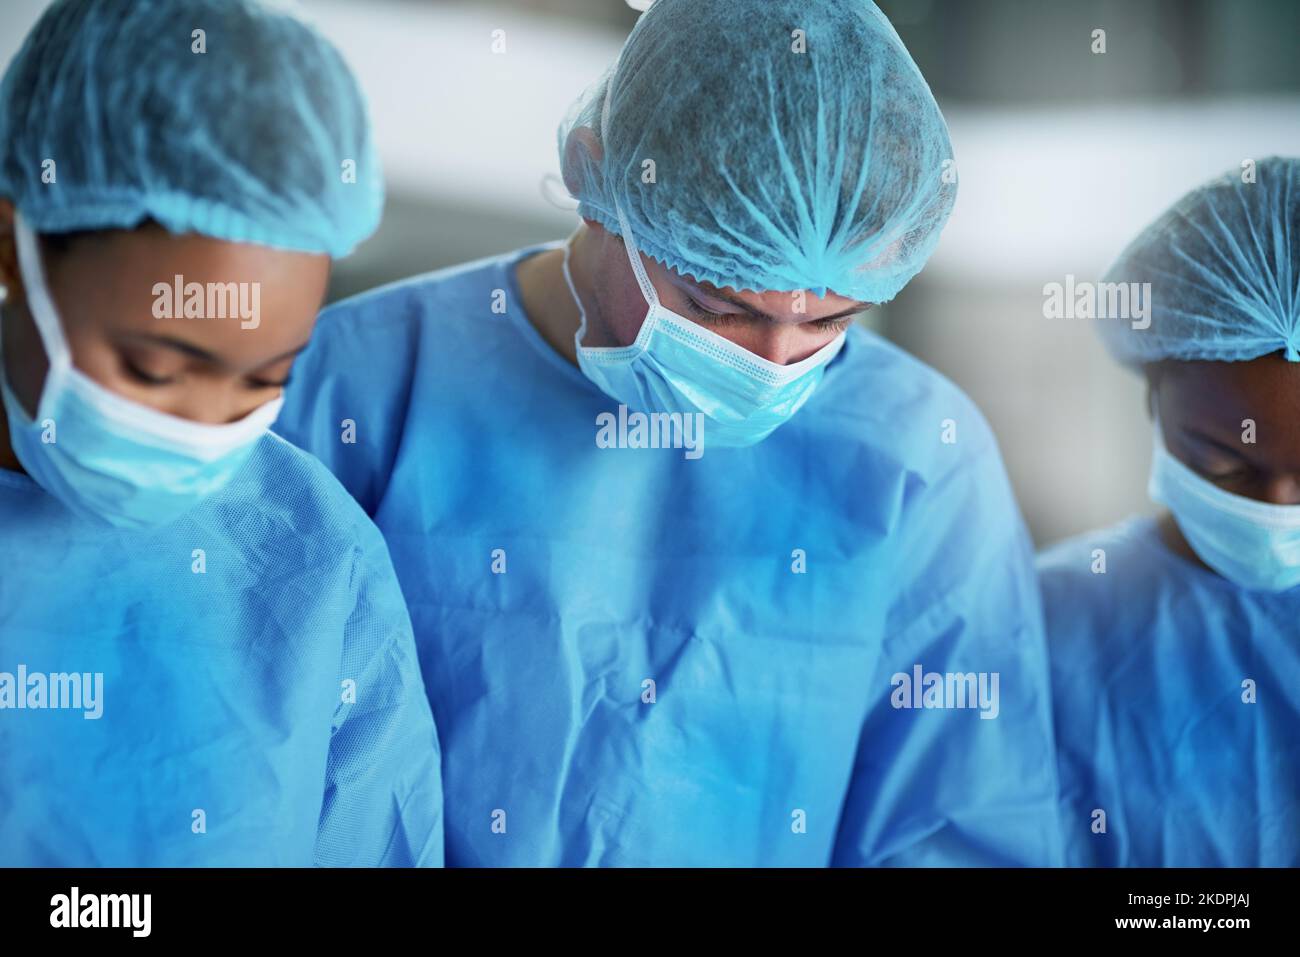 Yeux vifs, mains stables. Une équipe de chirurgiens effectuant une intervention médicale dans une salle d'opération. Banque D'Images